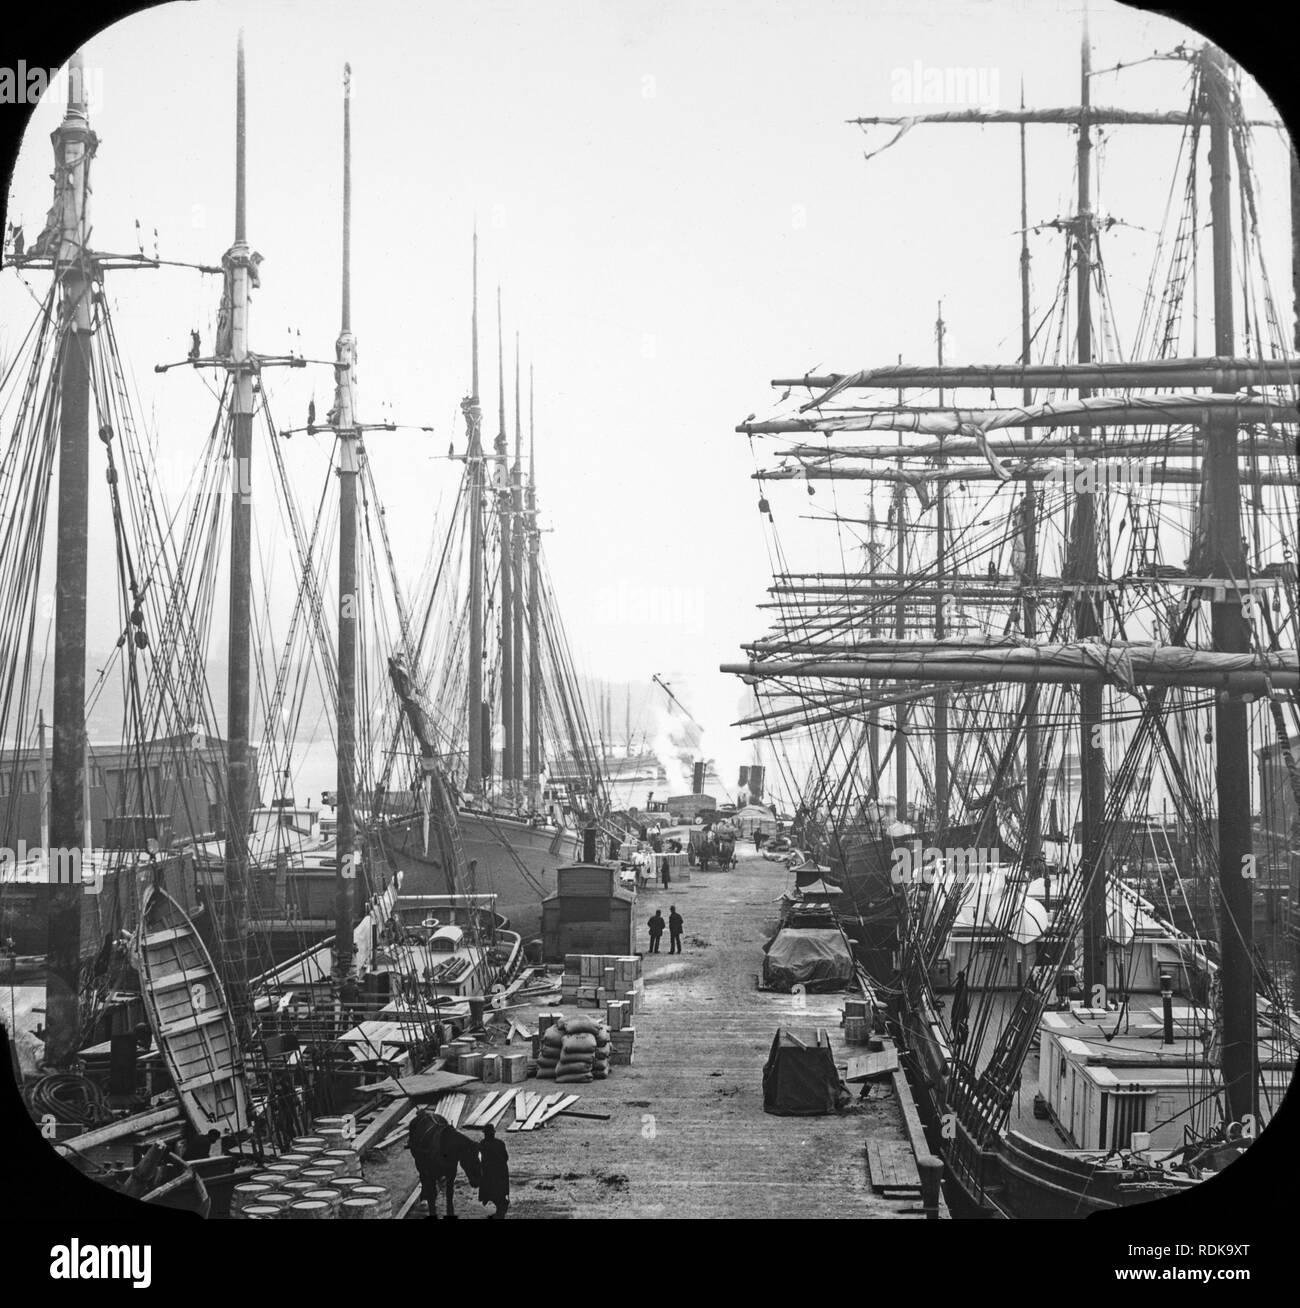 Späten viktorianischen Blick auf die Docks in New York City. Viele Segelschiffe können gesehen werden laden oder Ihre Güter entladen. Stockfoto